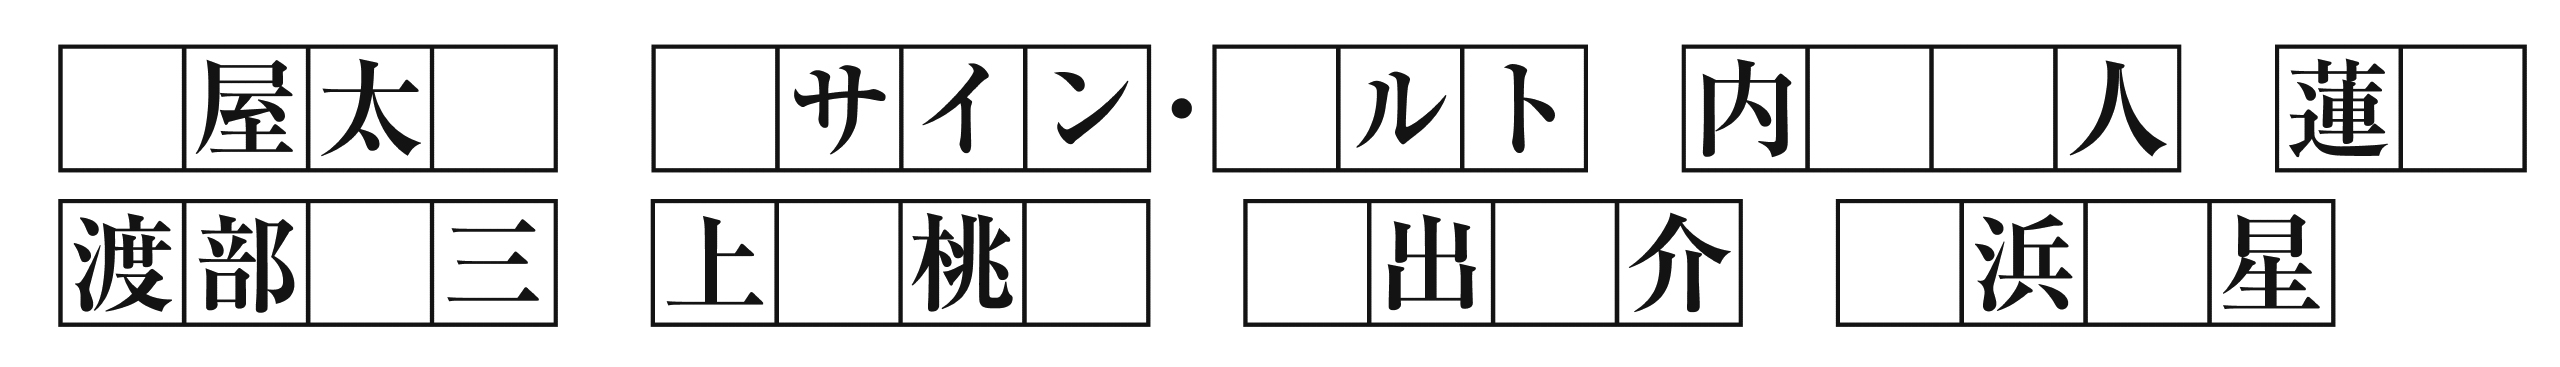 問題4番目、１マスに１文字ずつ入ります。漢字の場合は、正しい表記で書き込んでください